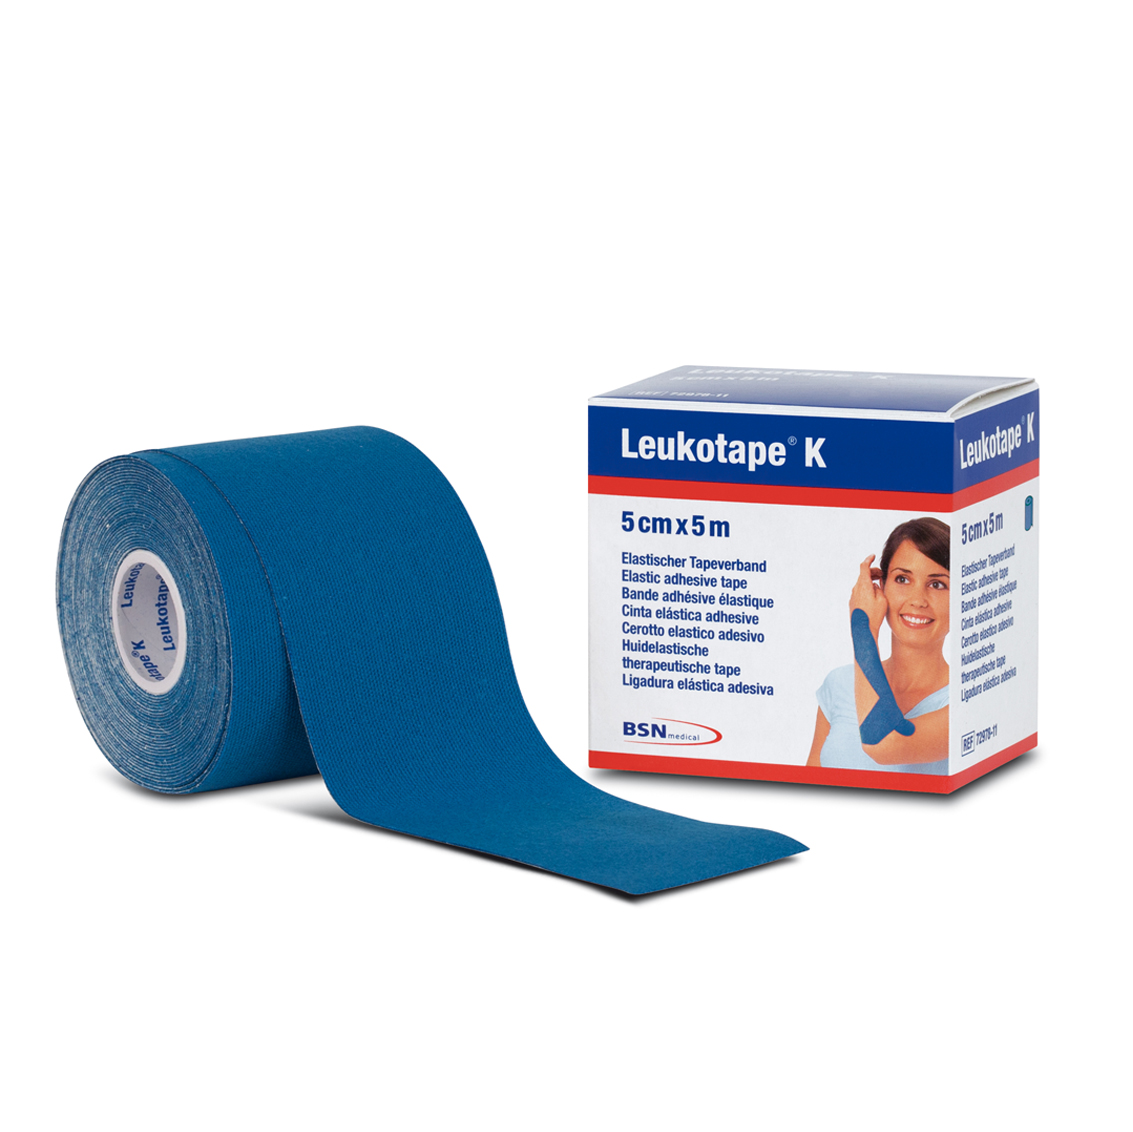 LEUKOTAPE K BLU - elastic plaster for neuromuscular taping 5 cm x 5 m 1 pc